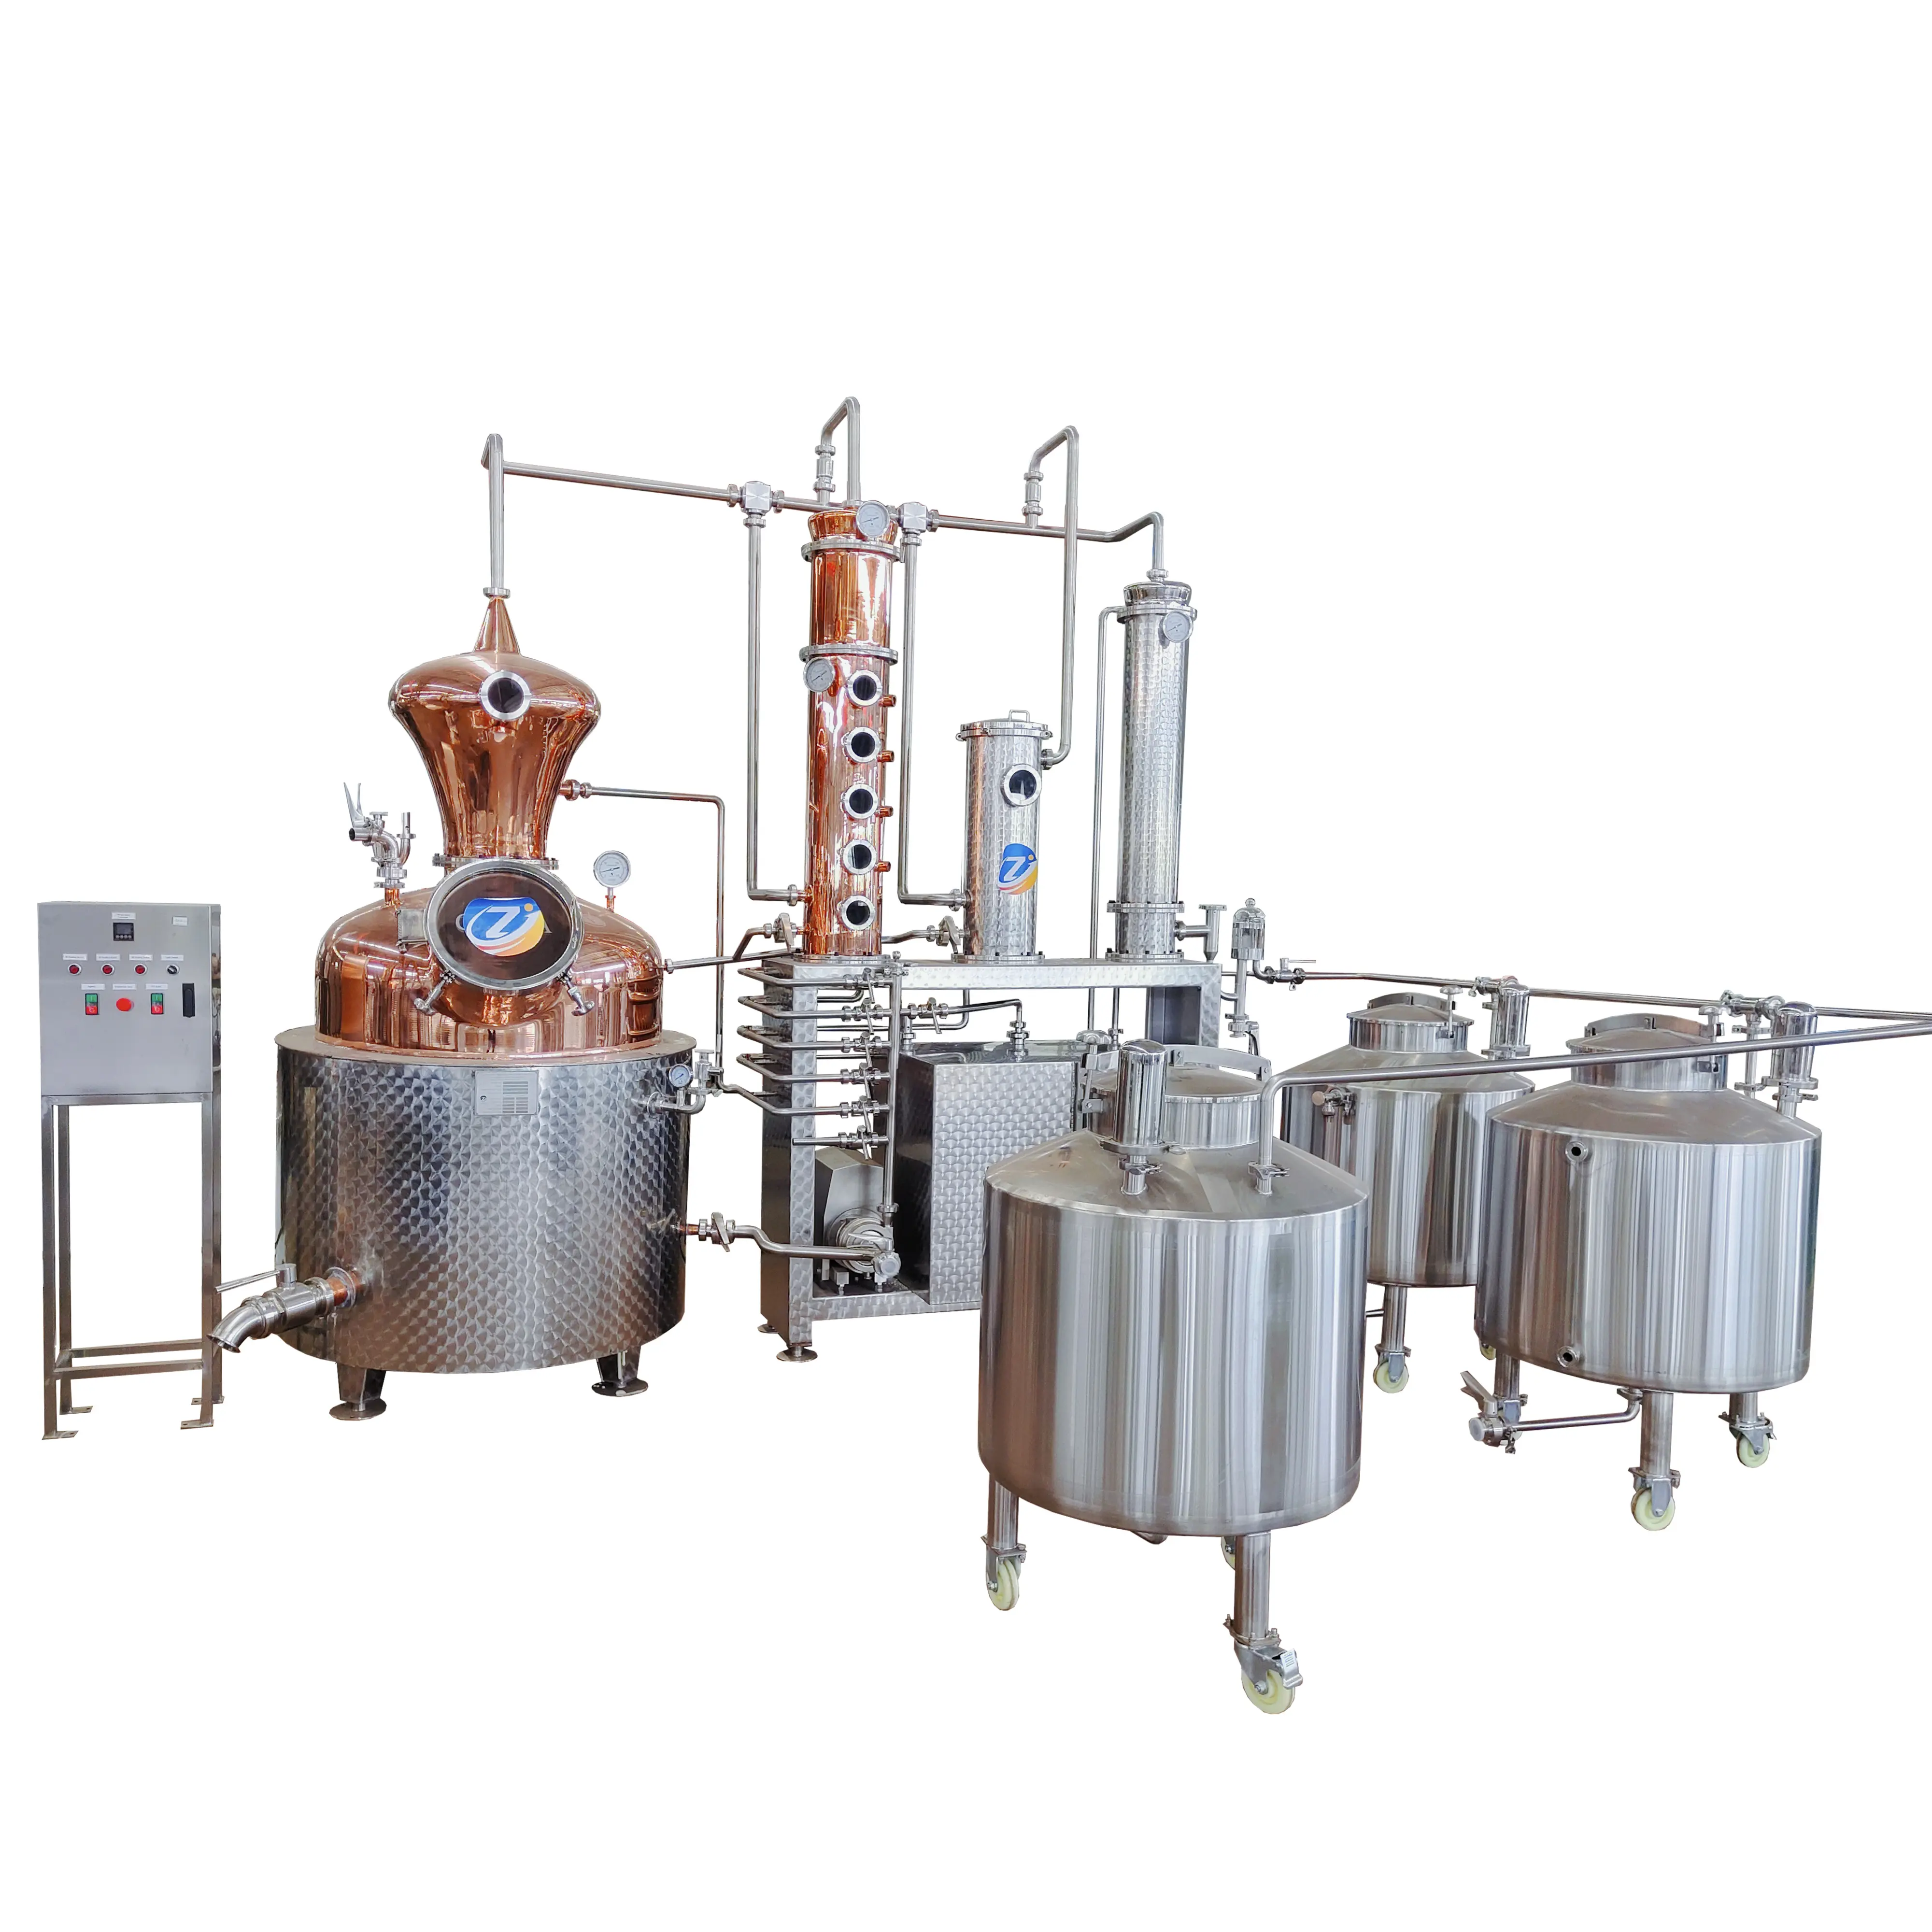 Ligne de production de spiritueux ZJ 300L prix équipement de distillation distillateur d'eau-de-vie alcoolisée